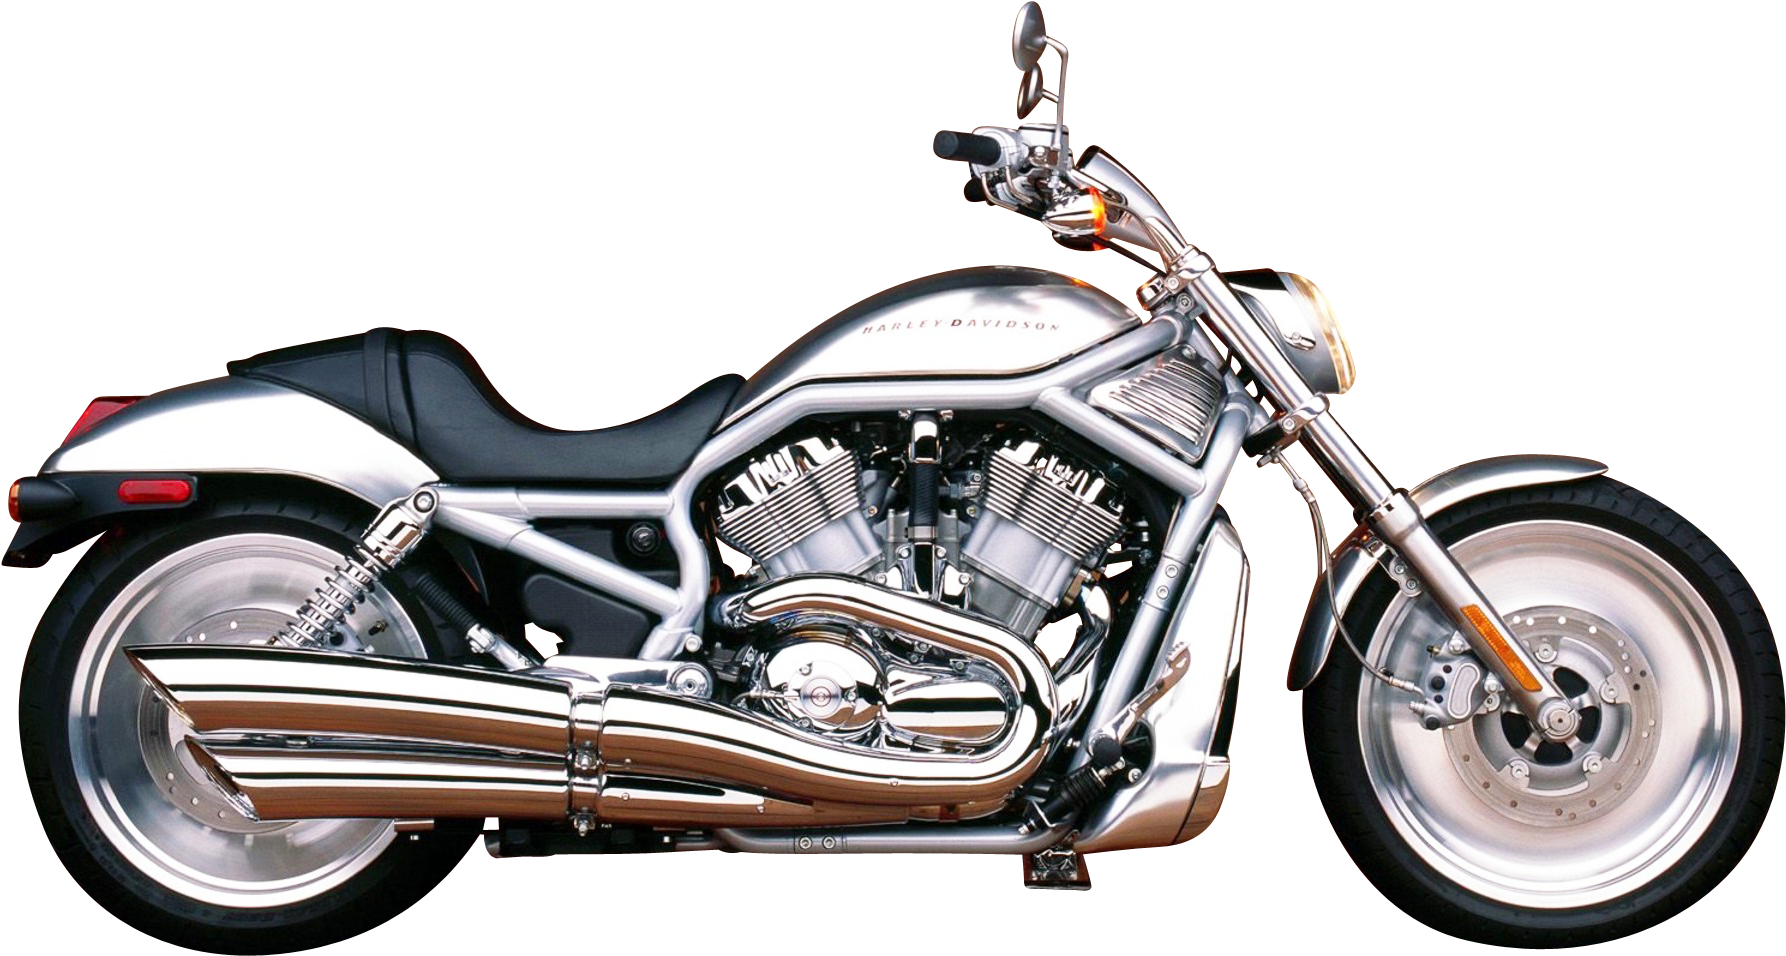 Silver Harley Davidson Motorcycle Bike Png Image - Harley Davidson V Rod 2019 (1844x994), Png Download